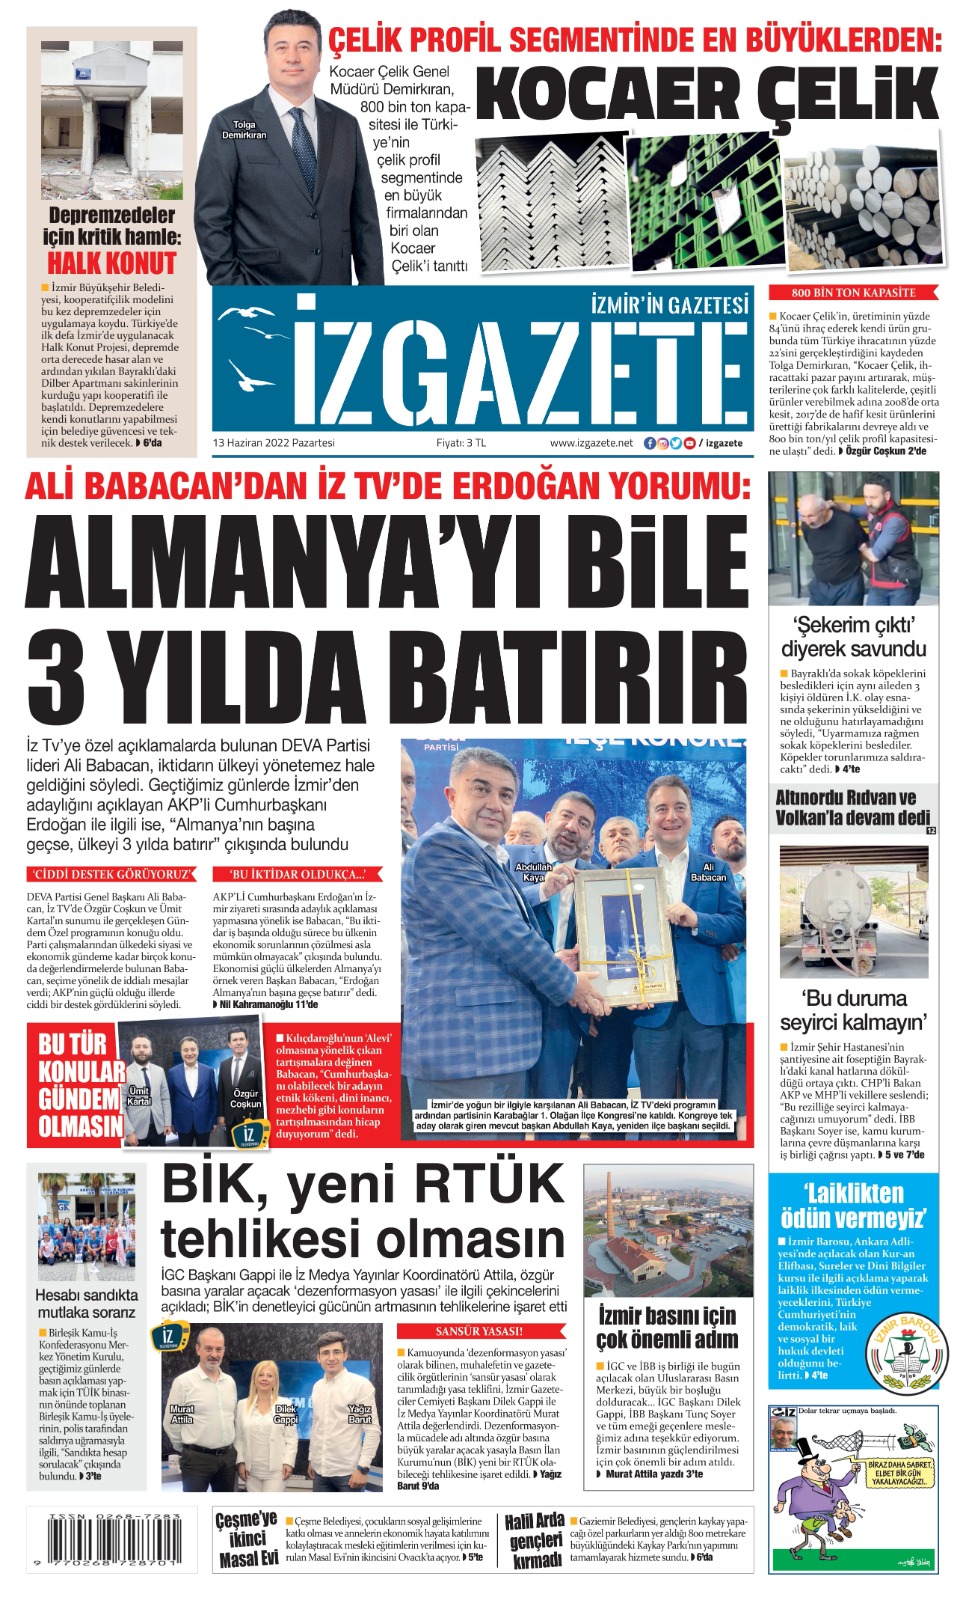 İz Gazete - İzmir'in Gazetesi - 13.06.2022 Manşeti